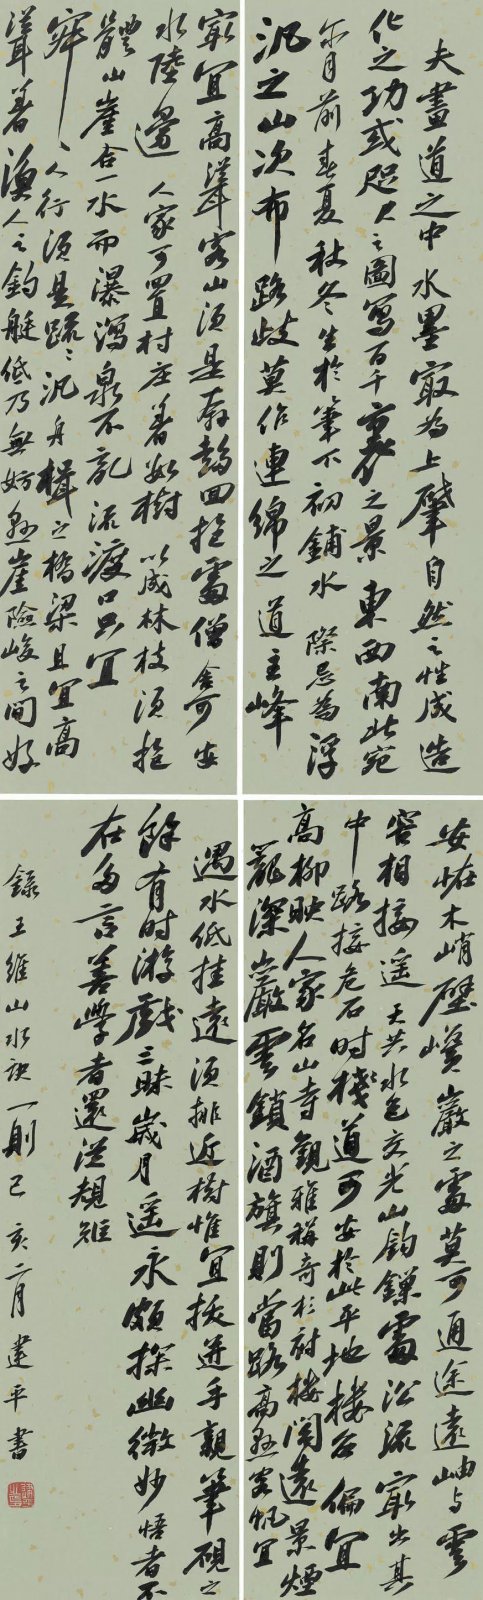 【展讯】惟彼孤山——郭强师生书法篆刻作品展即将在中国印学博物馆展出